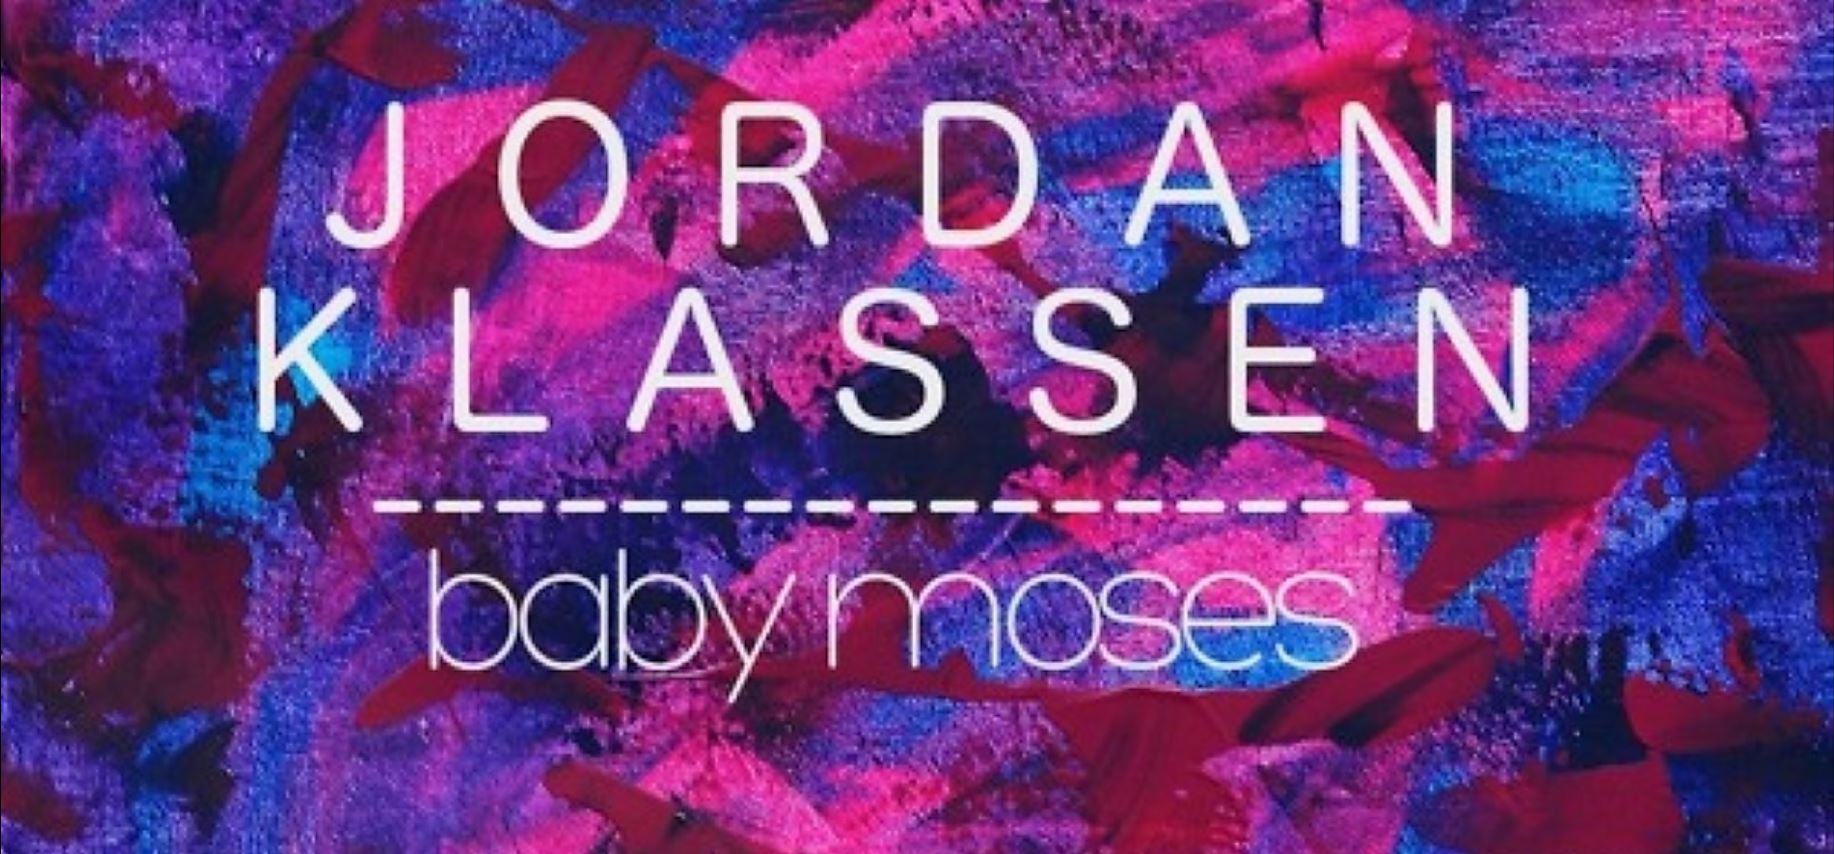 Jordan Klassen – “Baby Moses” ⭐⭐⭐⭐⭐ 5/5: Now Streaming